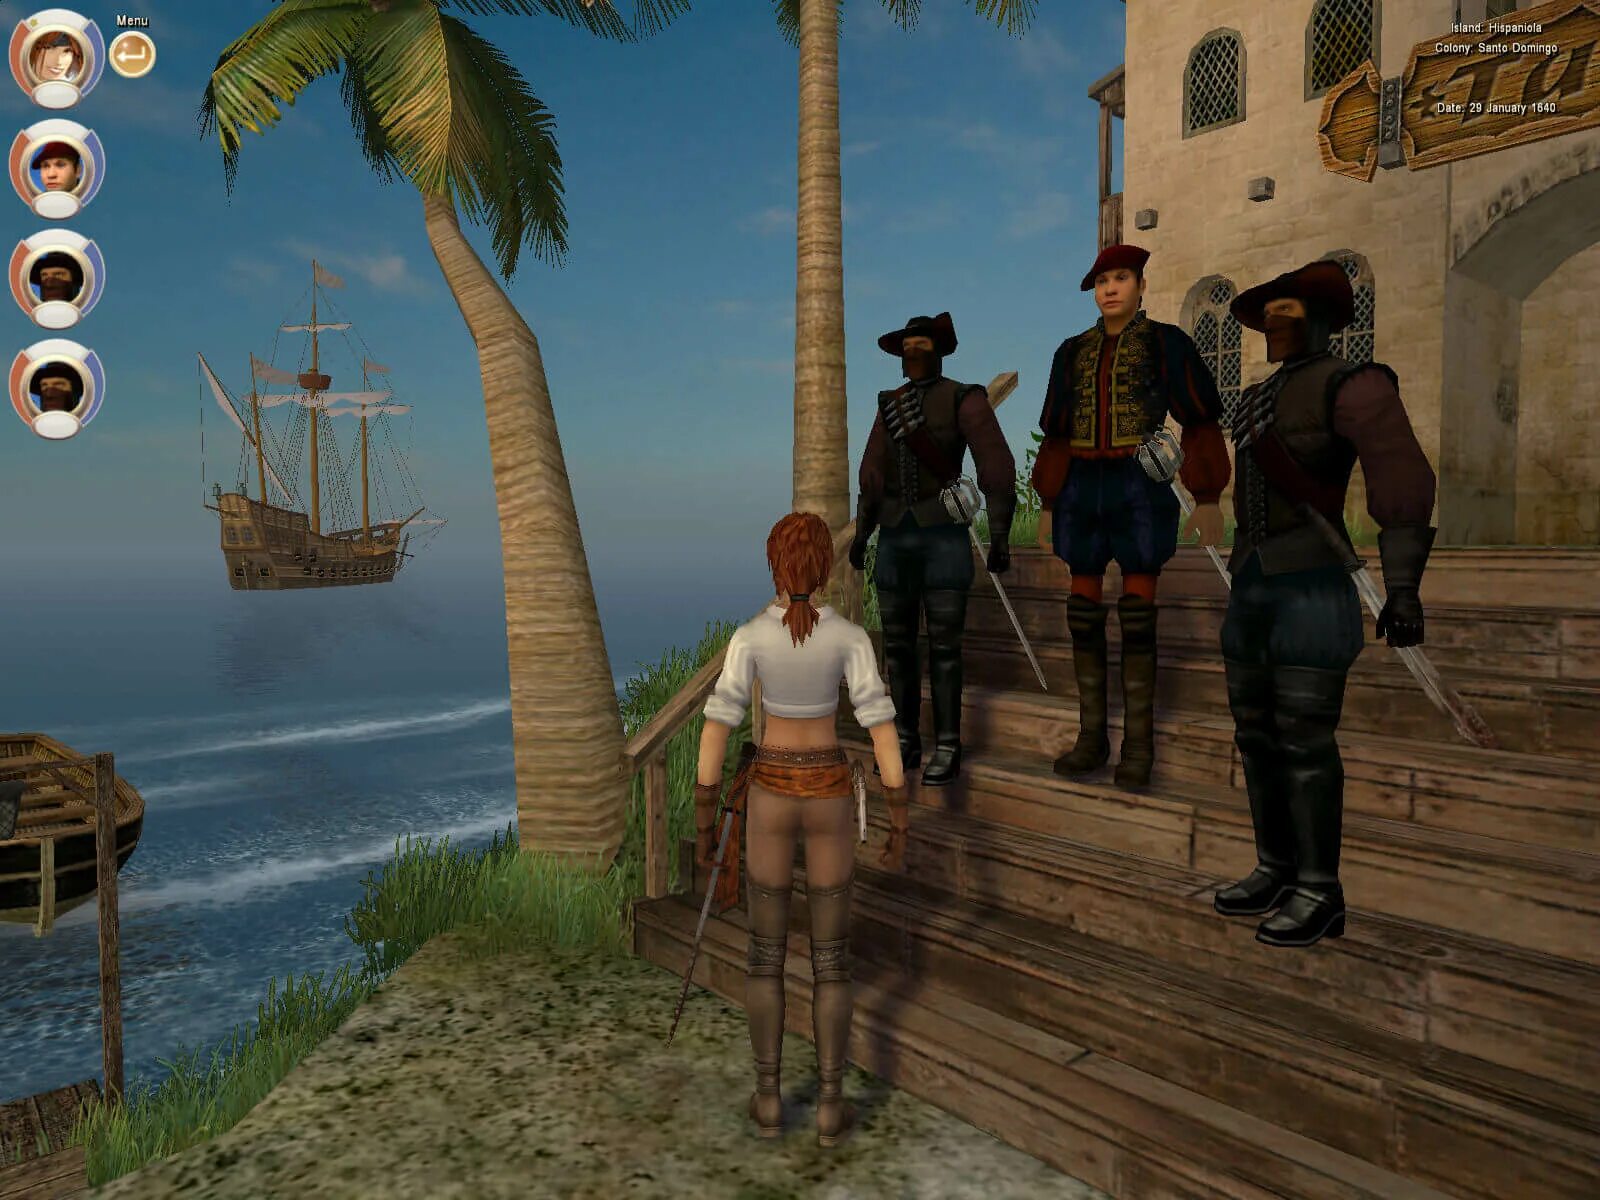 Корсары 3 пираты Карибского моря. Корсары III (2005). Age of Pirates: Caribbean Tales игра. Корсары пираты Карибского моря игра. Игра пираты с открытым миром